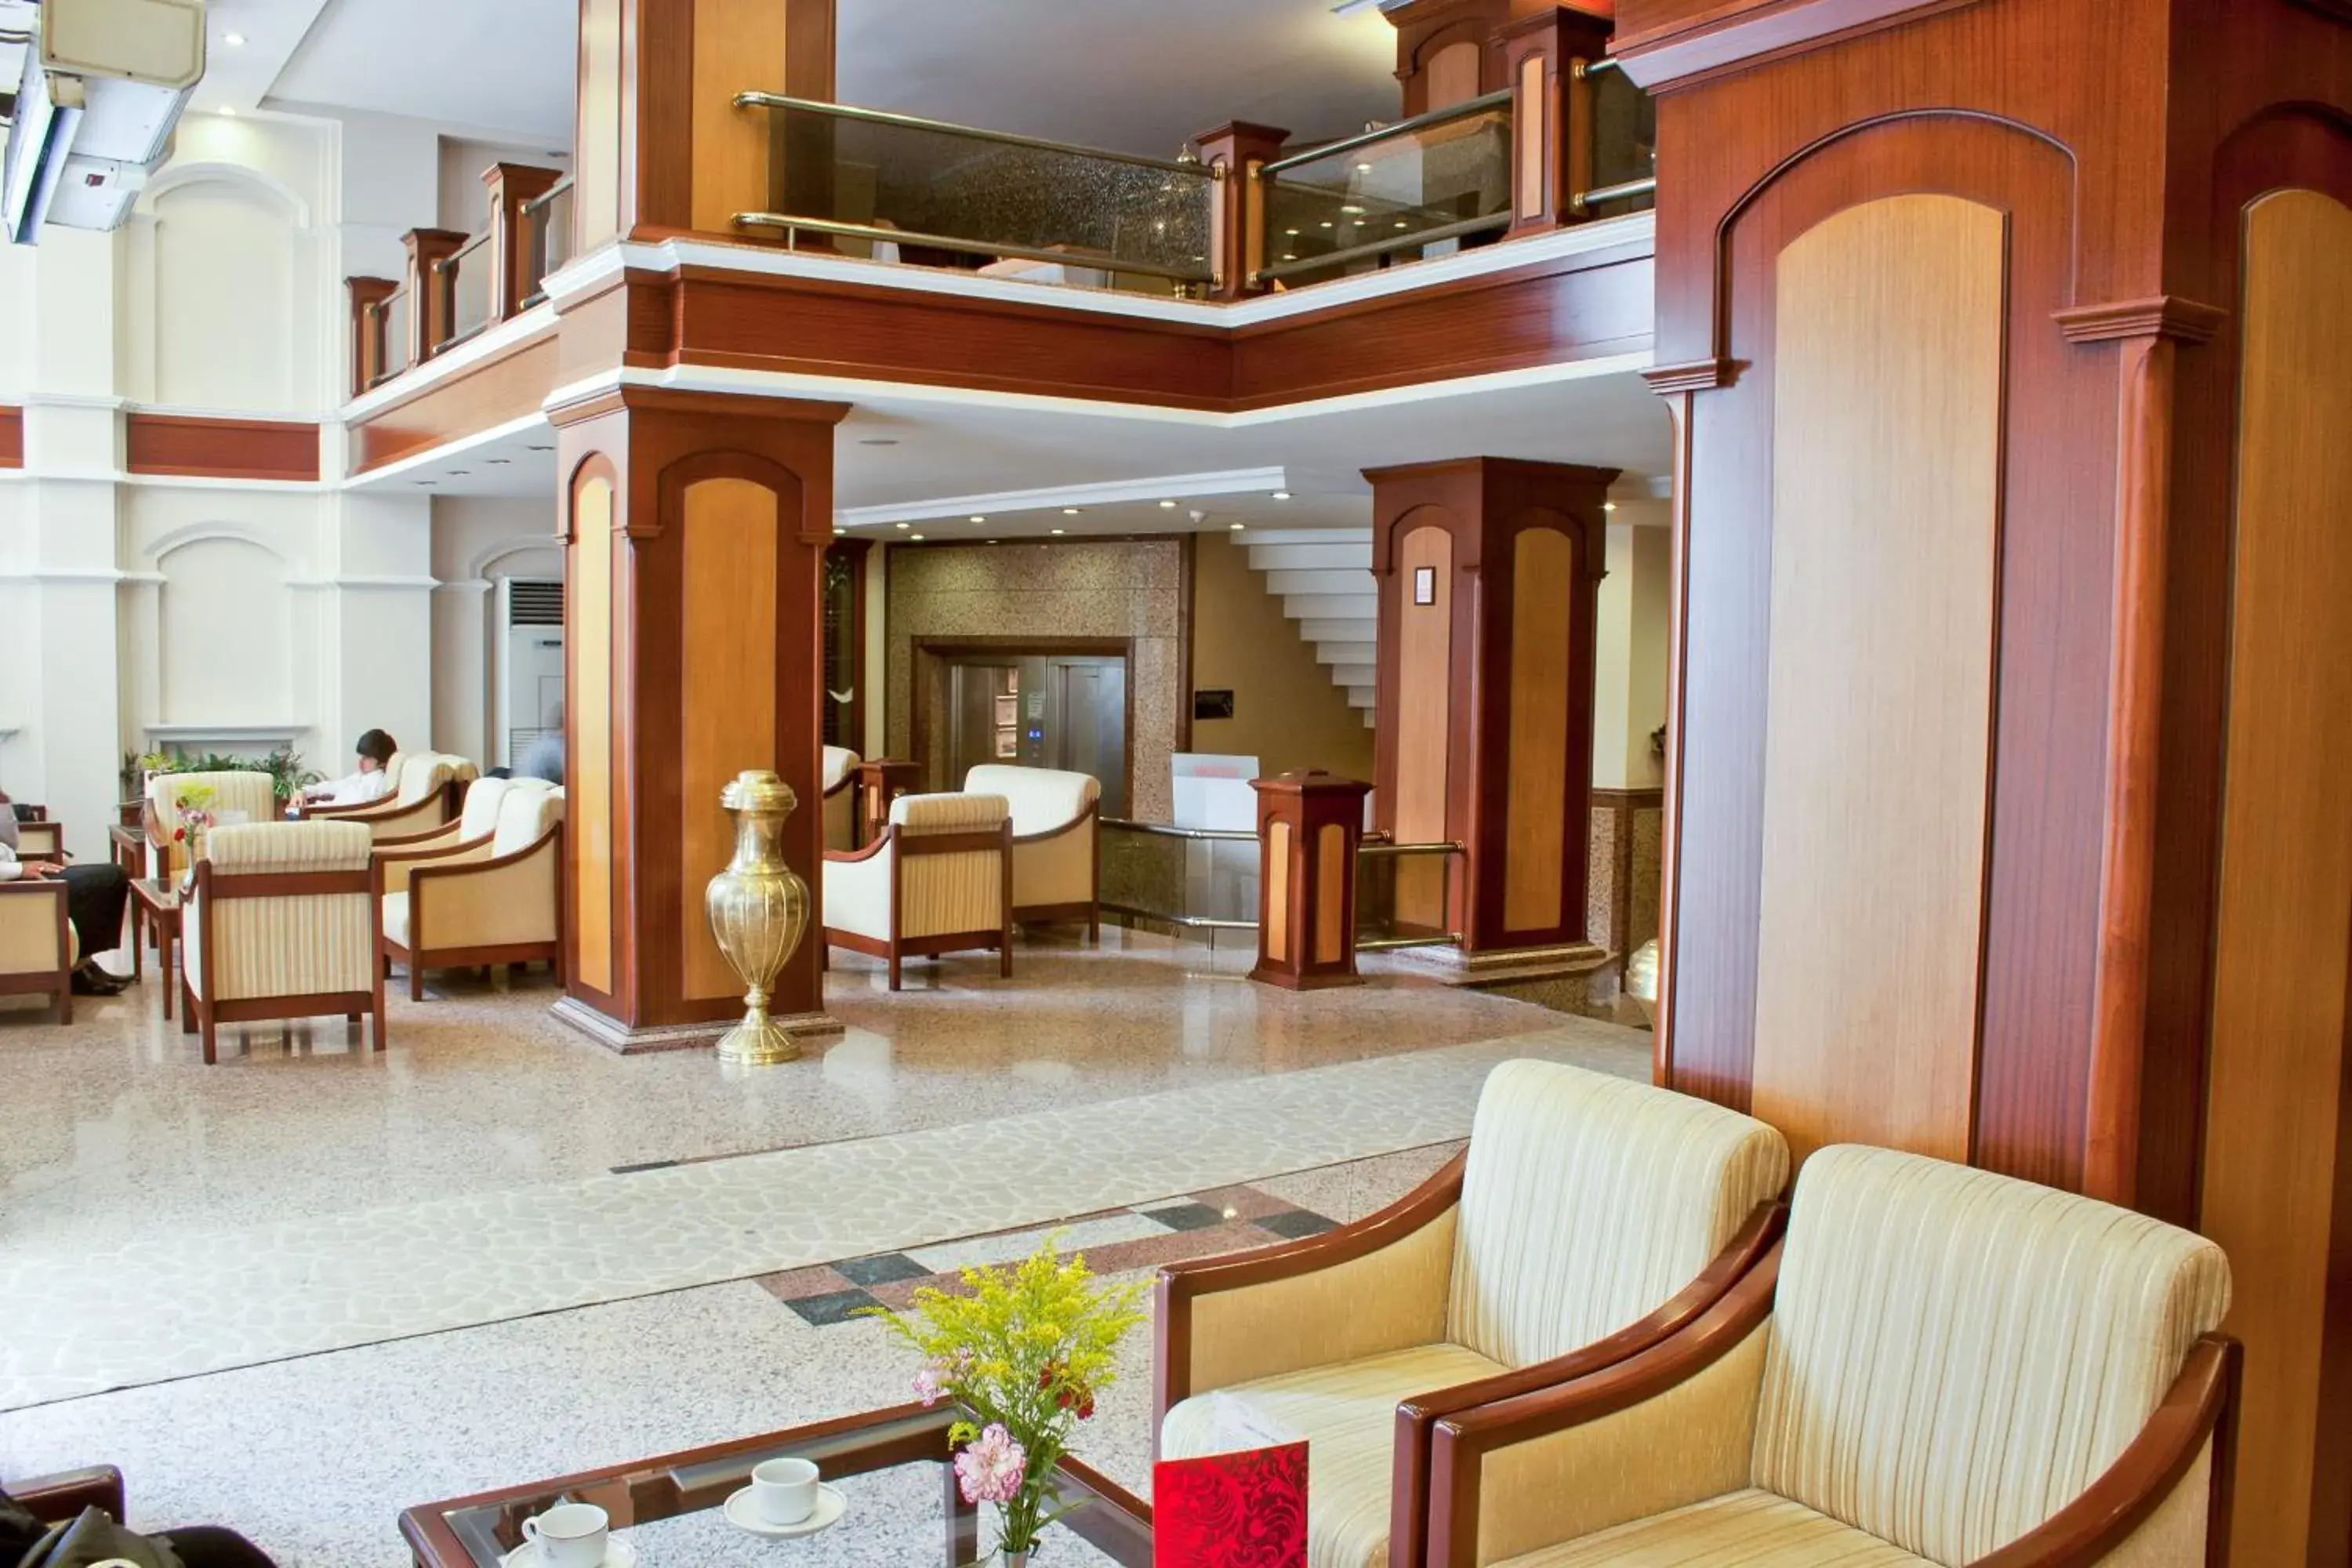 Lobby or reception in Klas Hotel